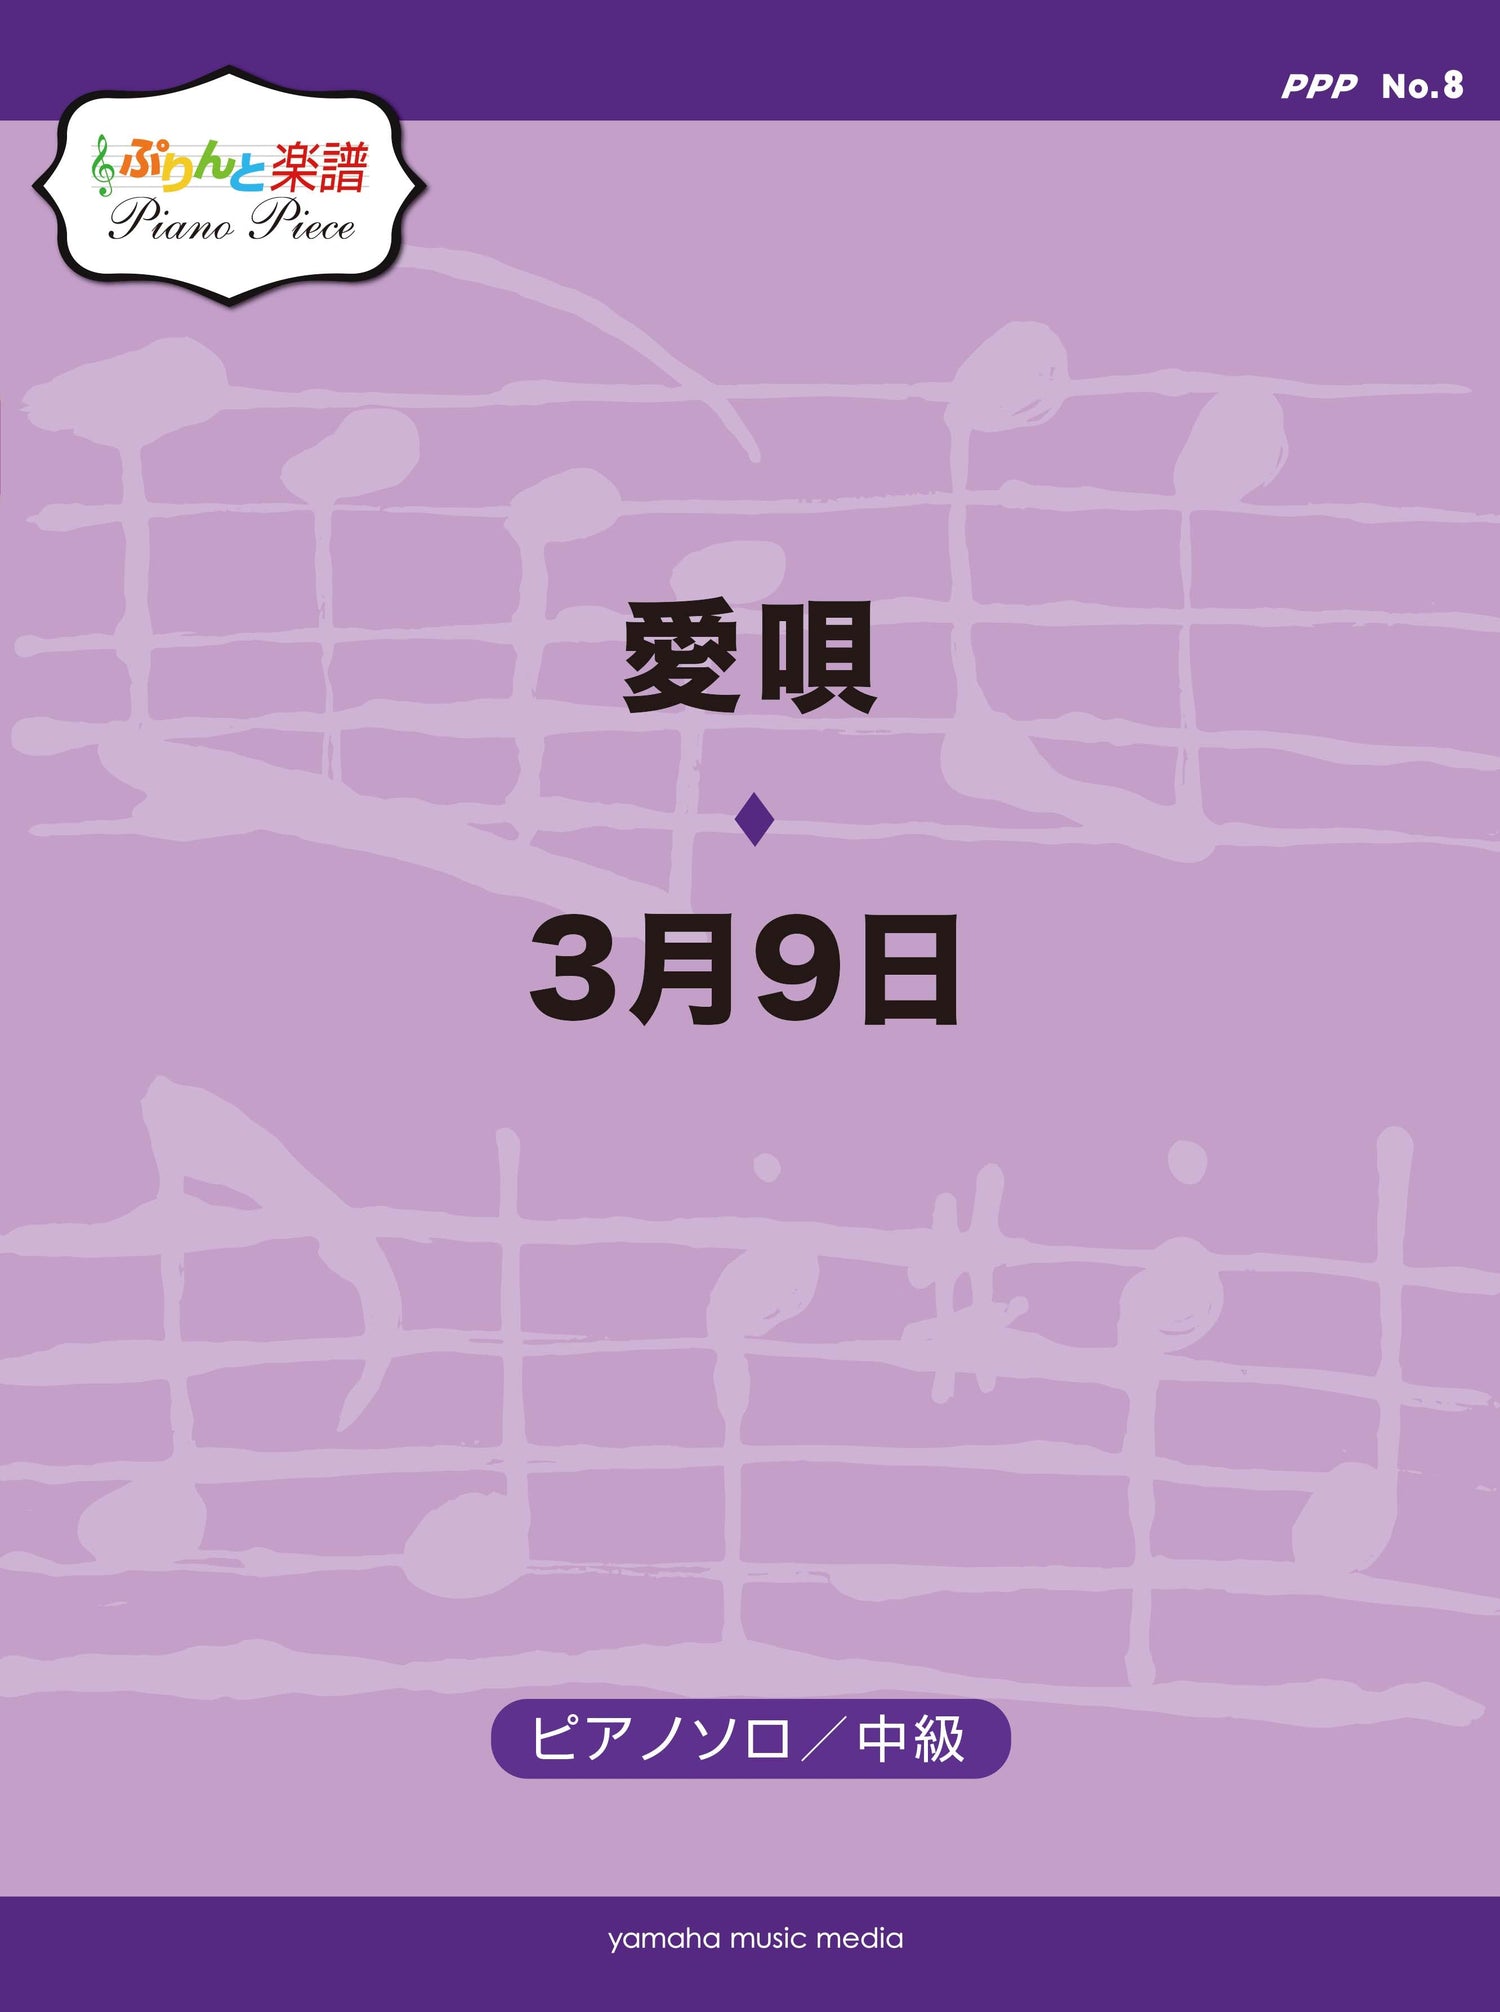 ぷりんと楽譜ピアノピース(PPP) No.8 愛唄/3月9日